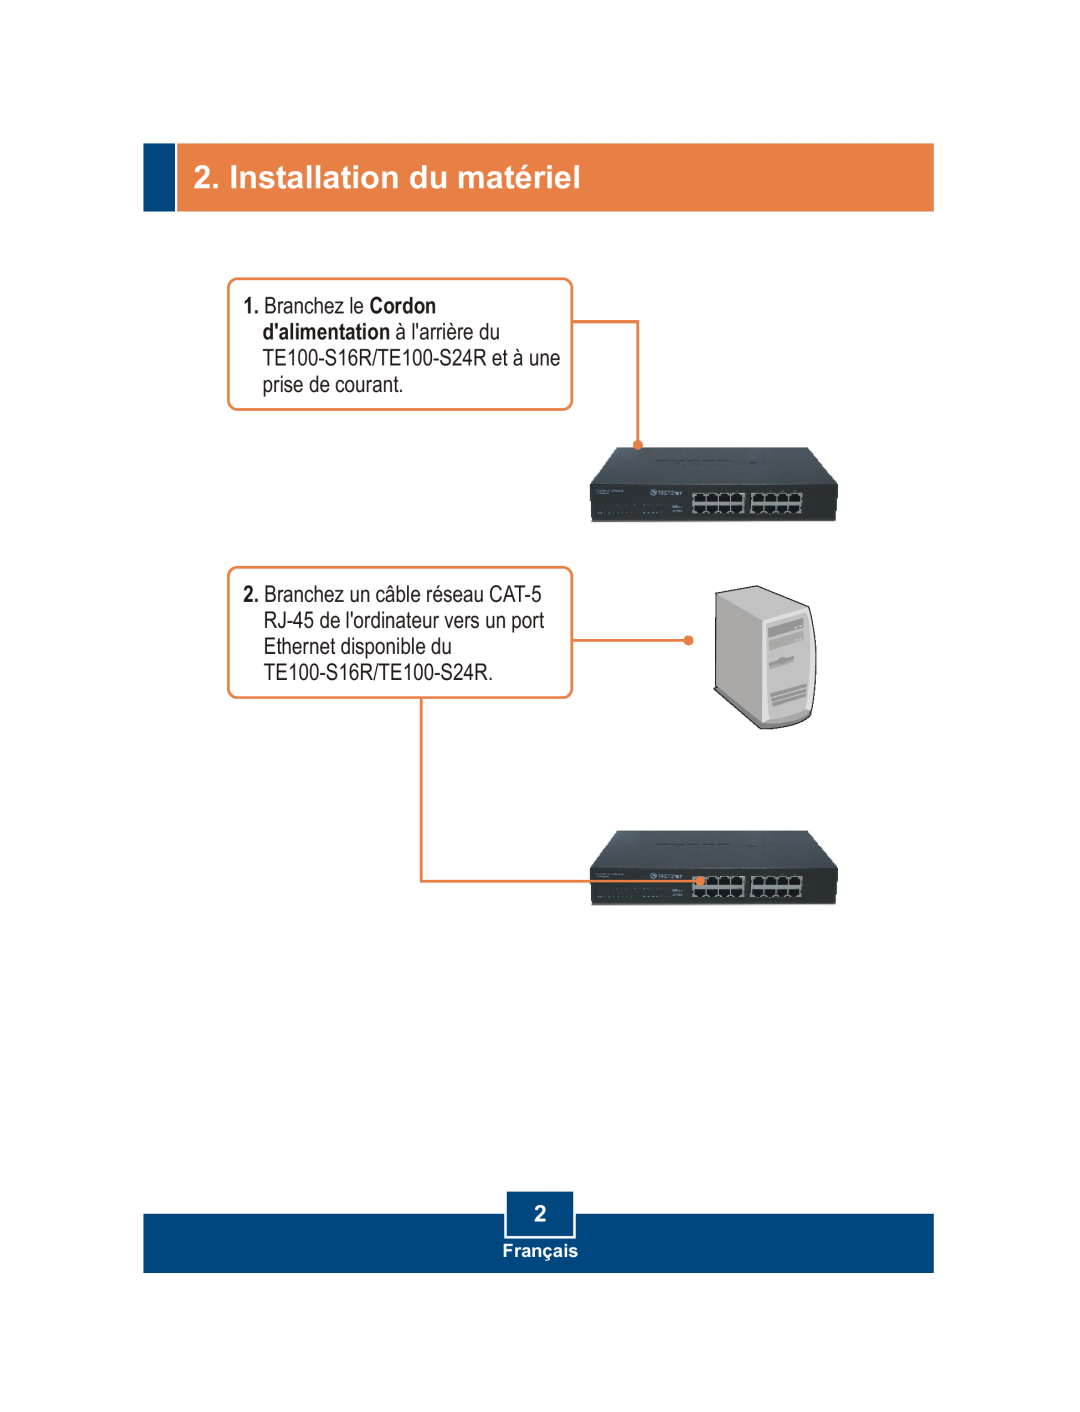 TRENDnet manual Installation du matériel, Ethernet disponible du TE100-S16R/TE100-S24R, Français 